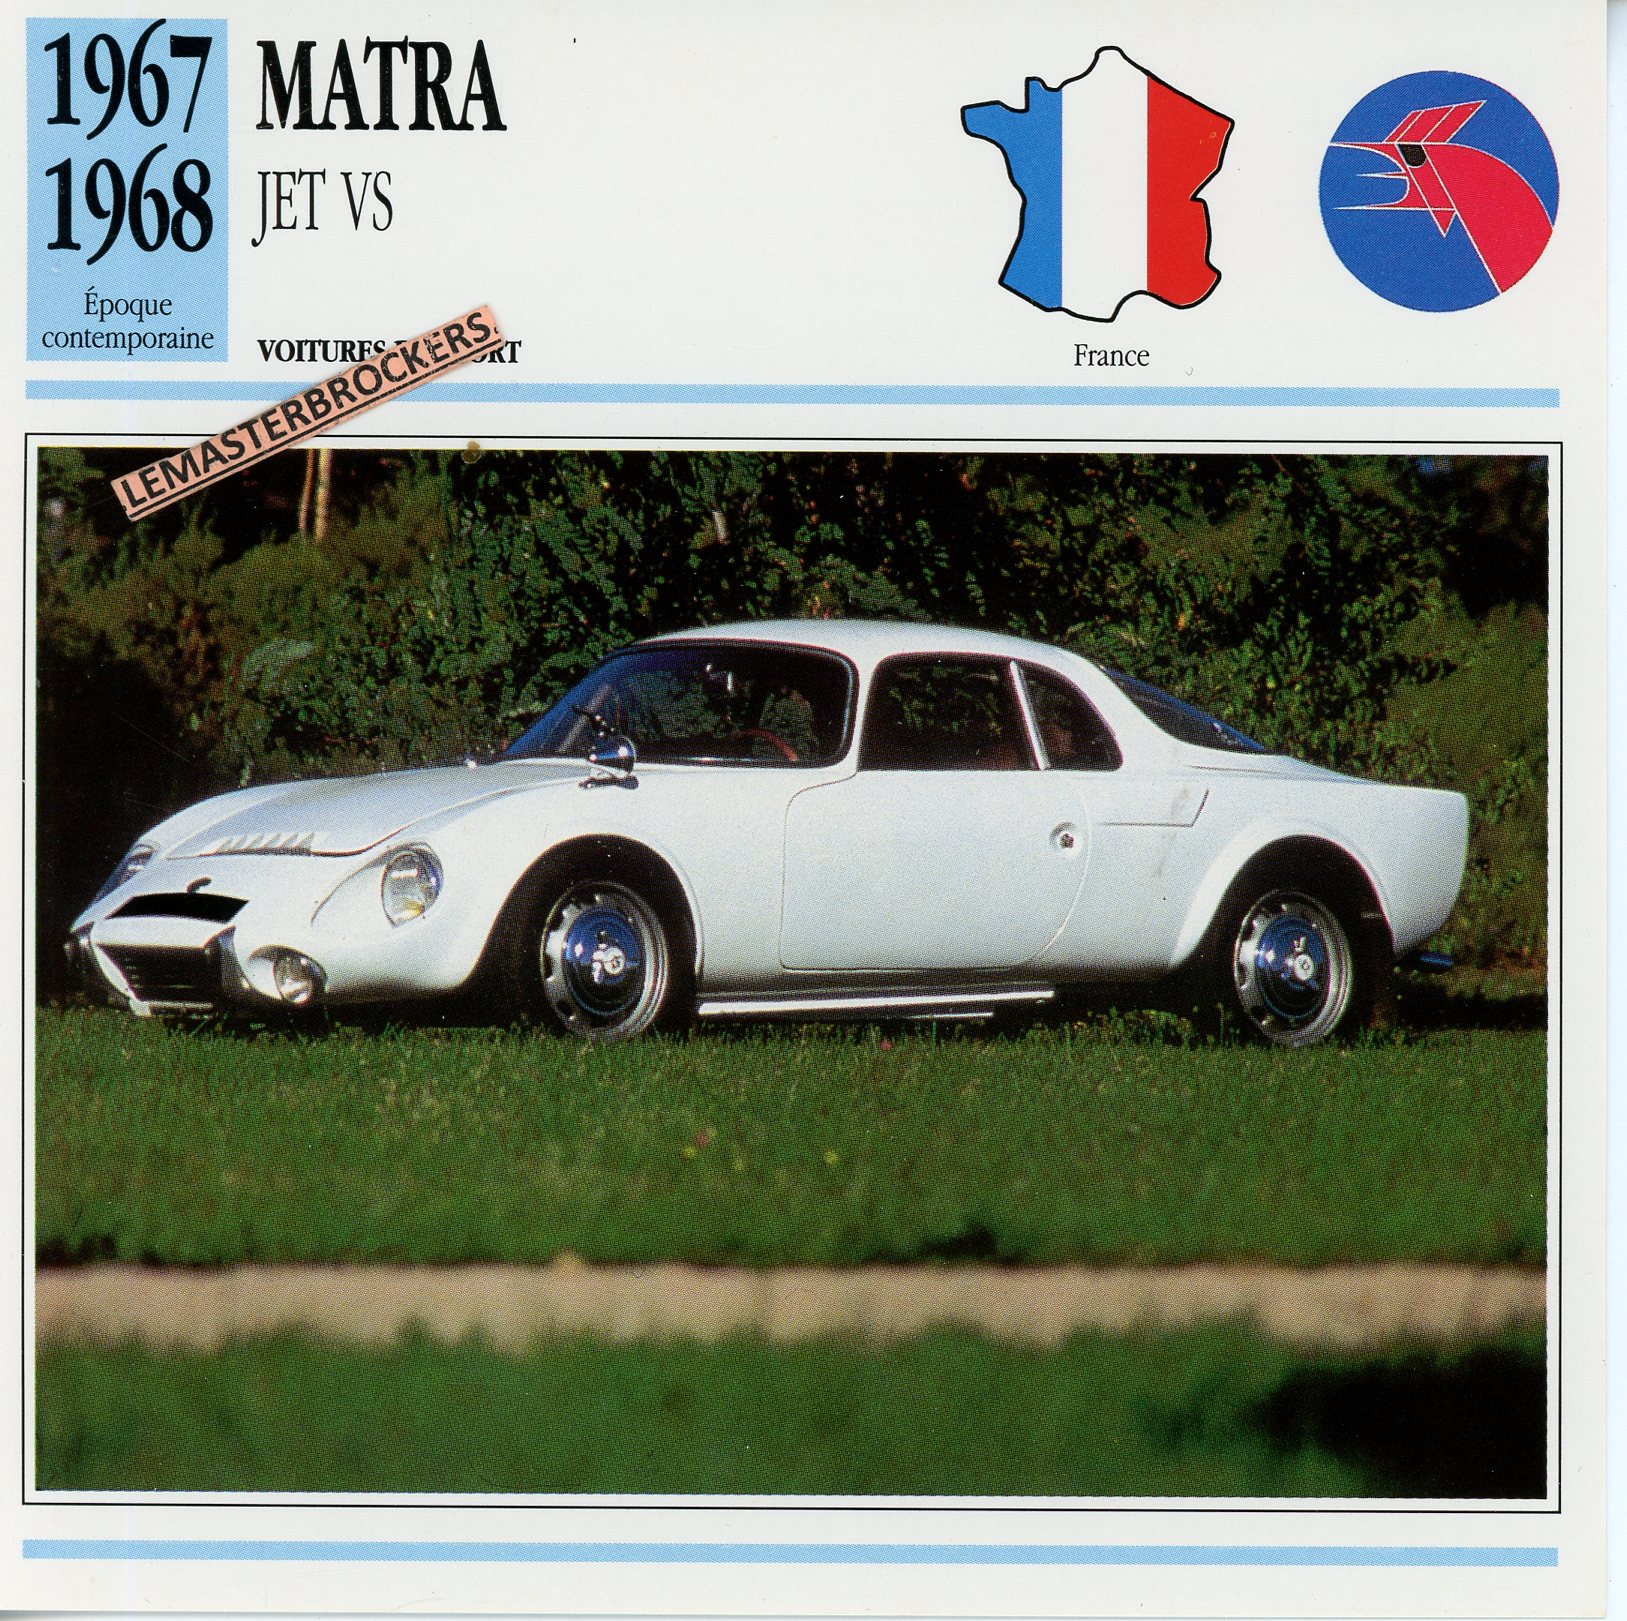 MATRA-JET-VS-1967-1968-FICHE-AUTO-ATLAS-LEMASTERBROCKERS